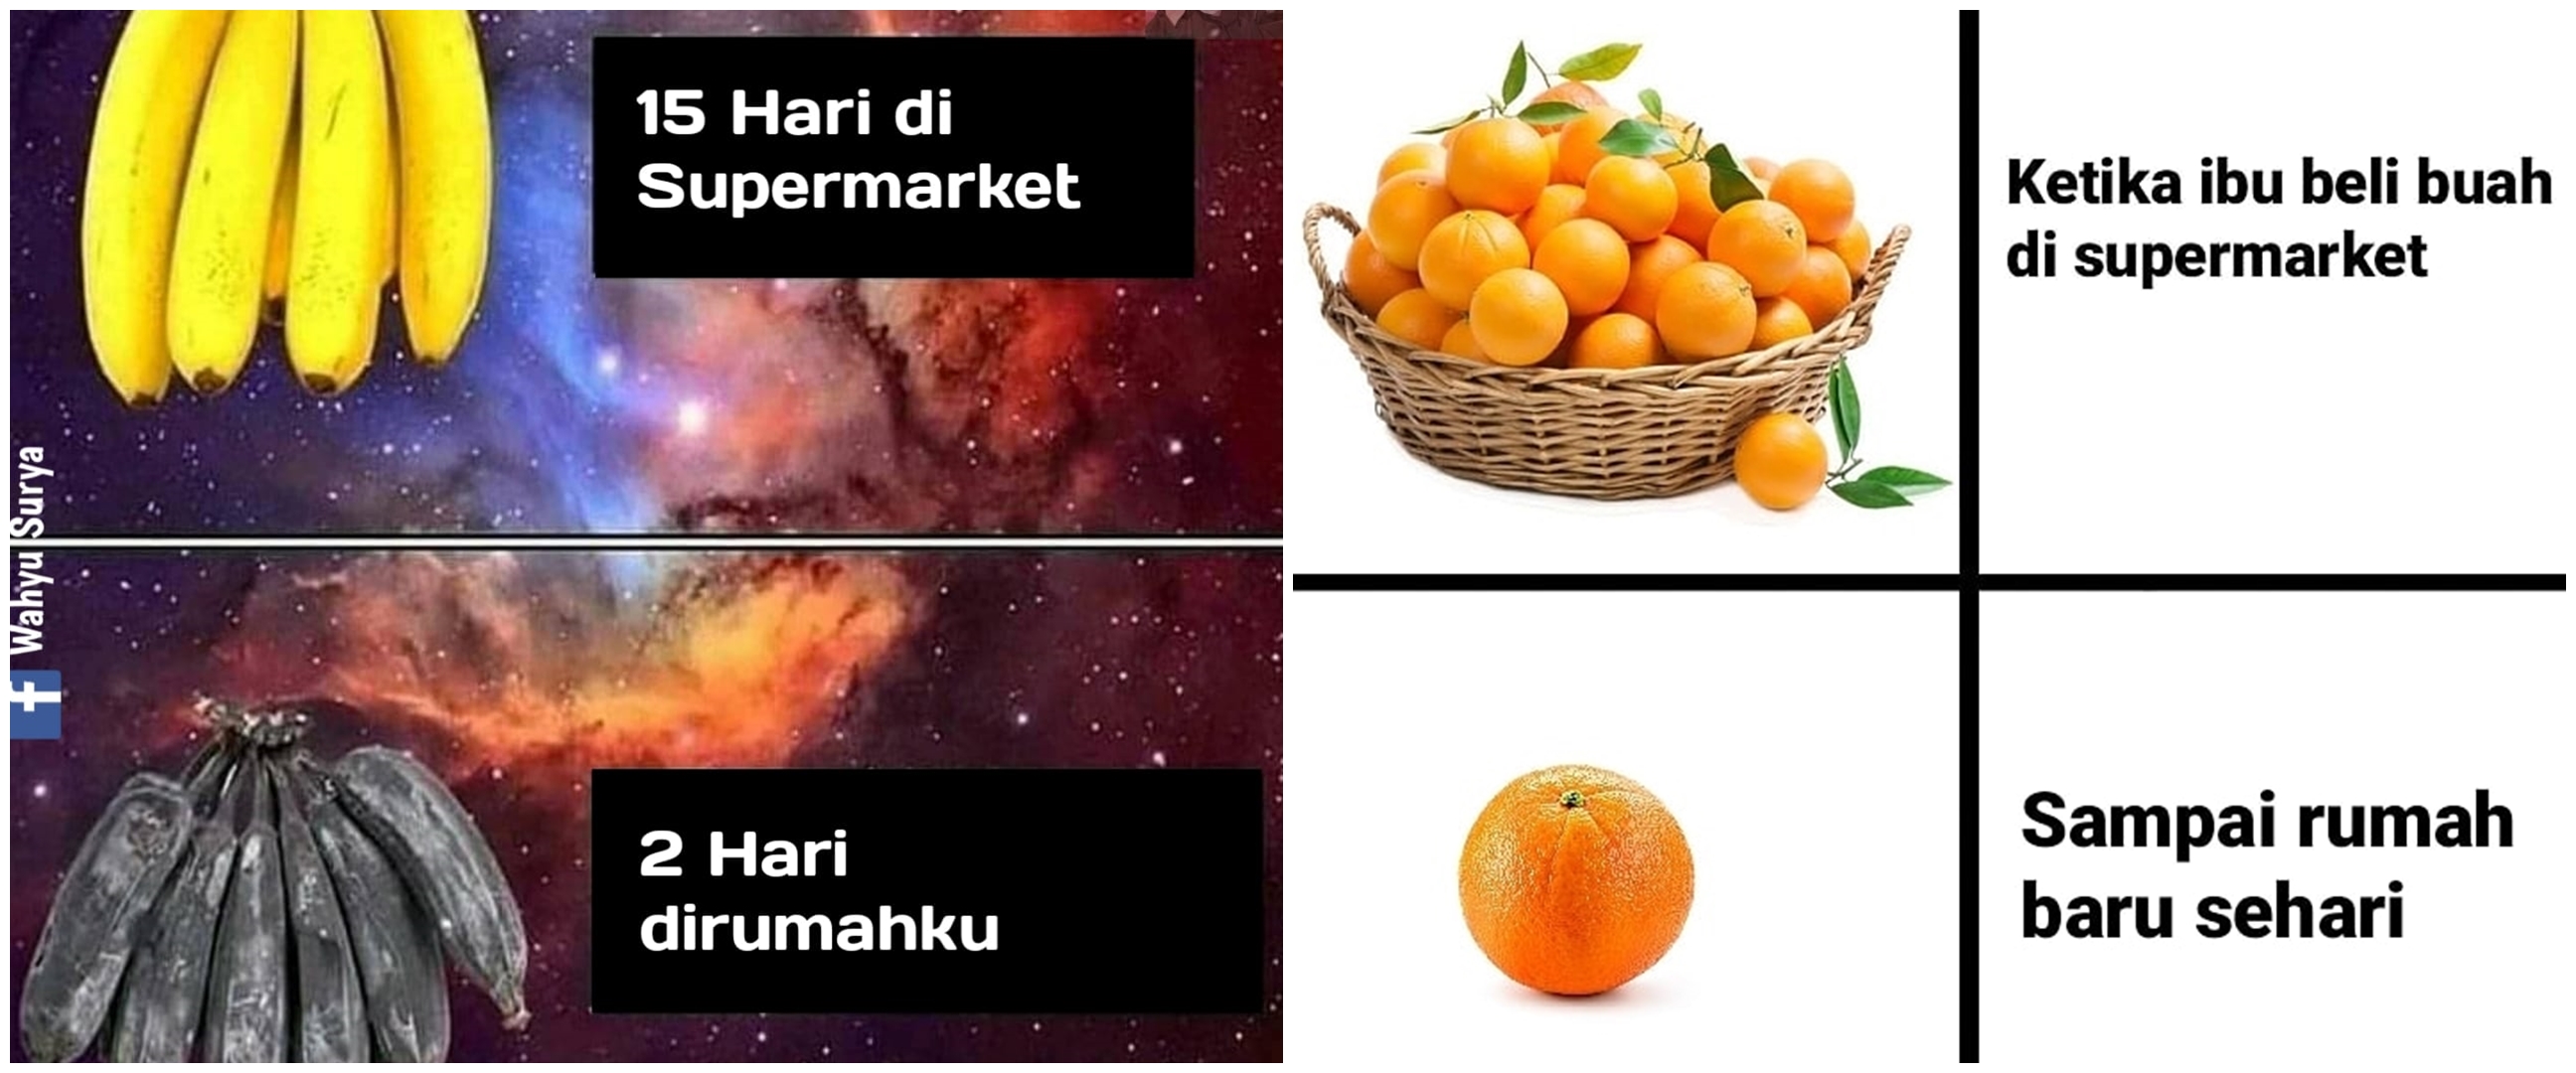 8 Meme lucu beda buah di supermarket dan di rumah, bikin angguk setuju